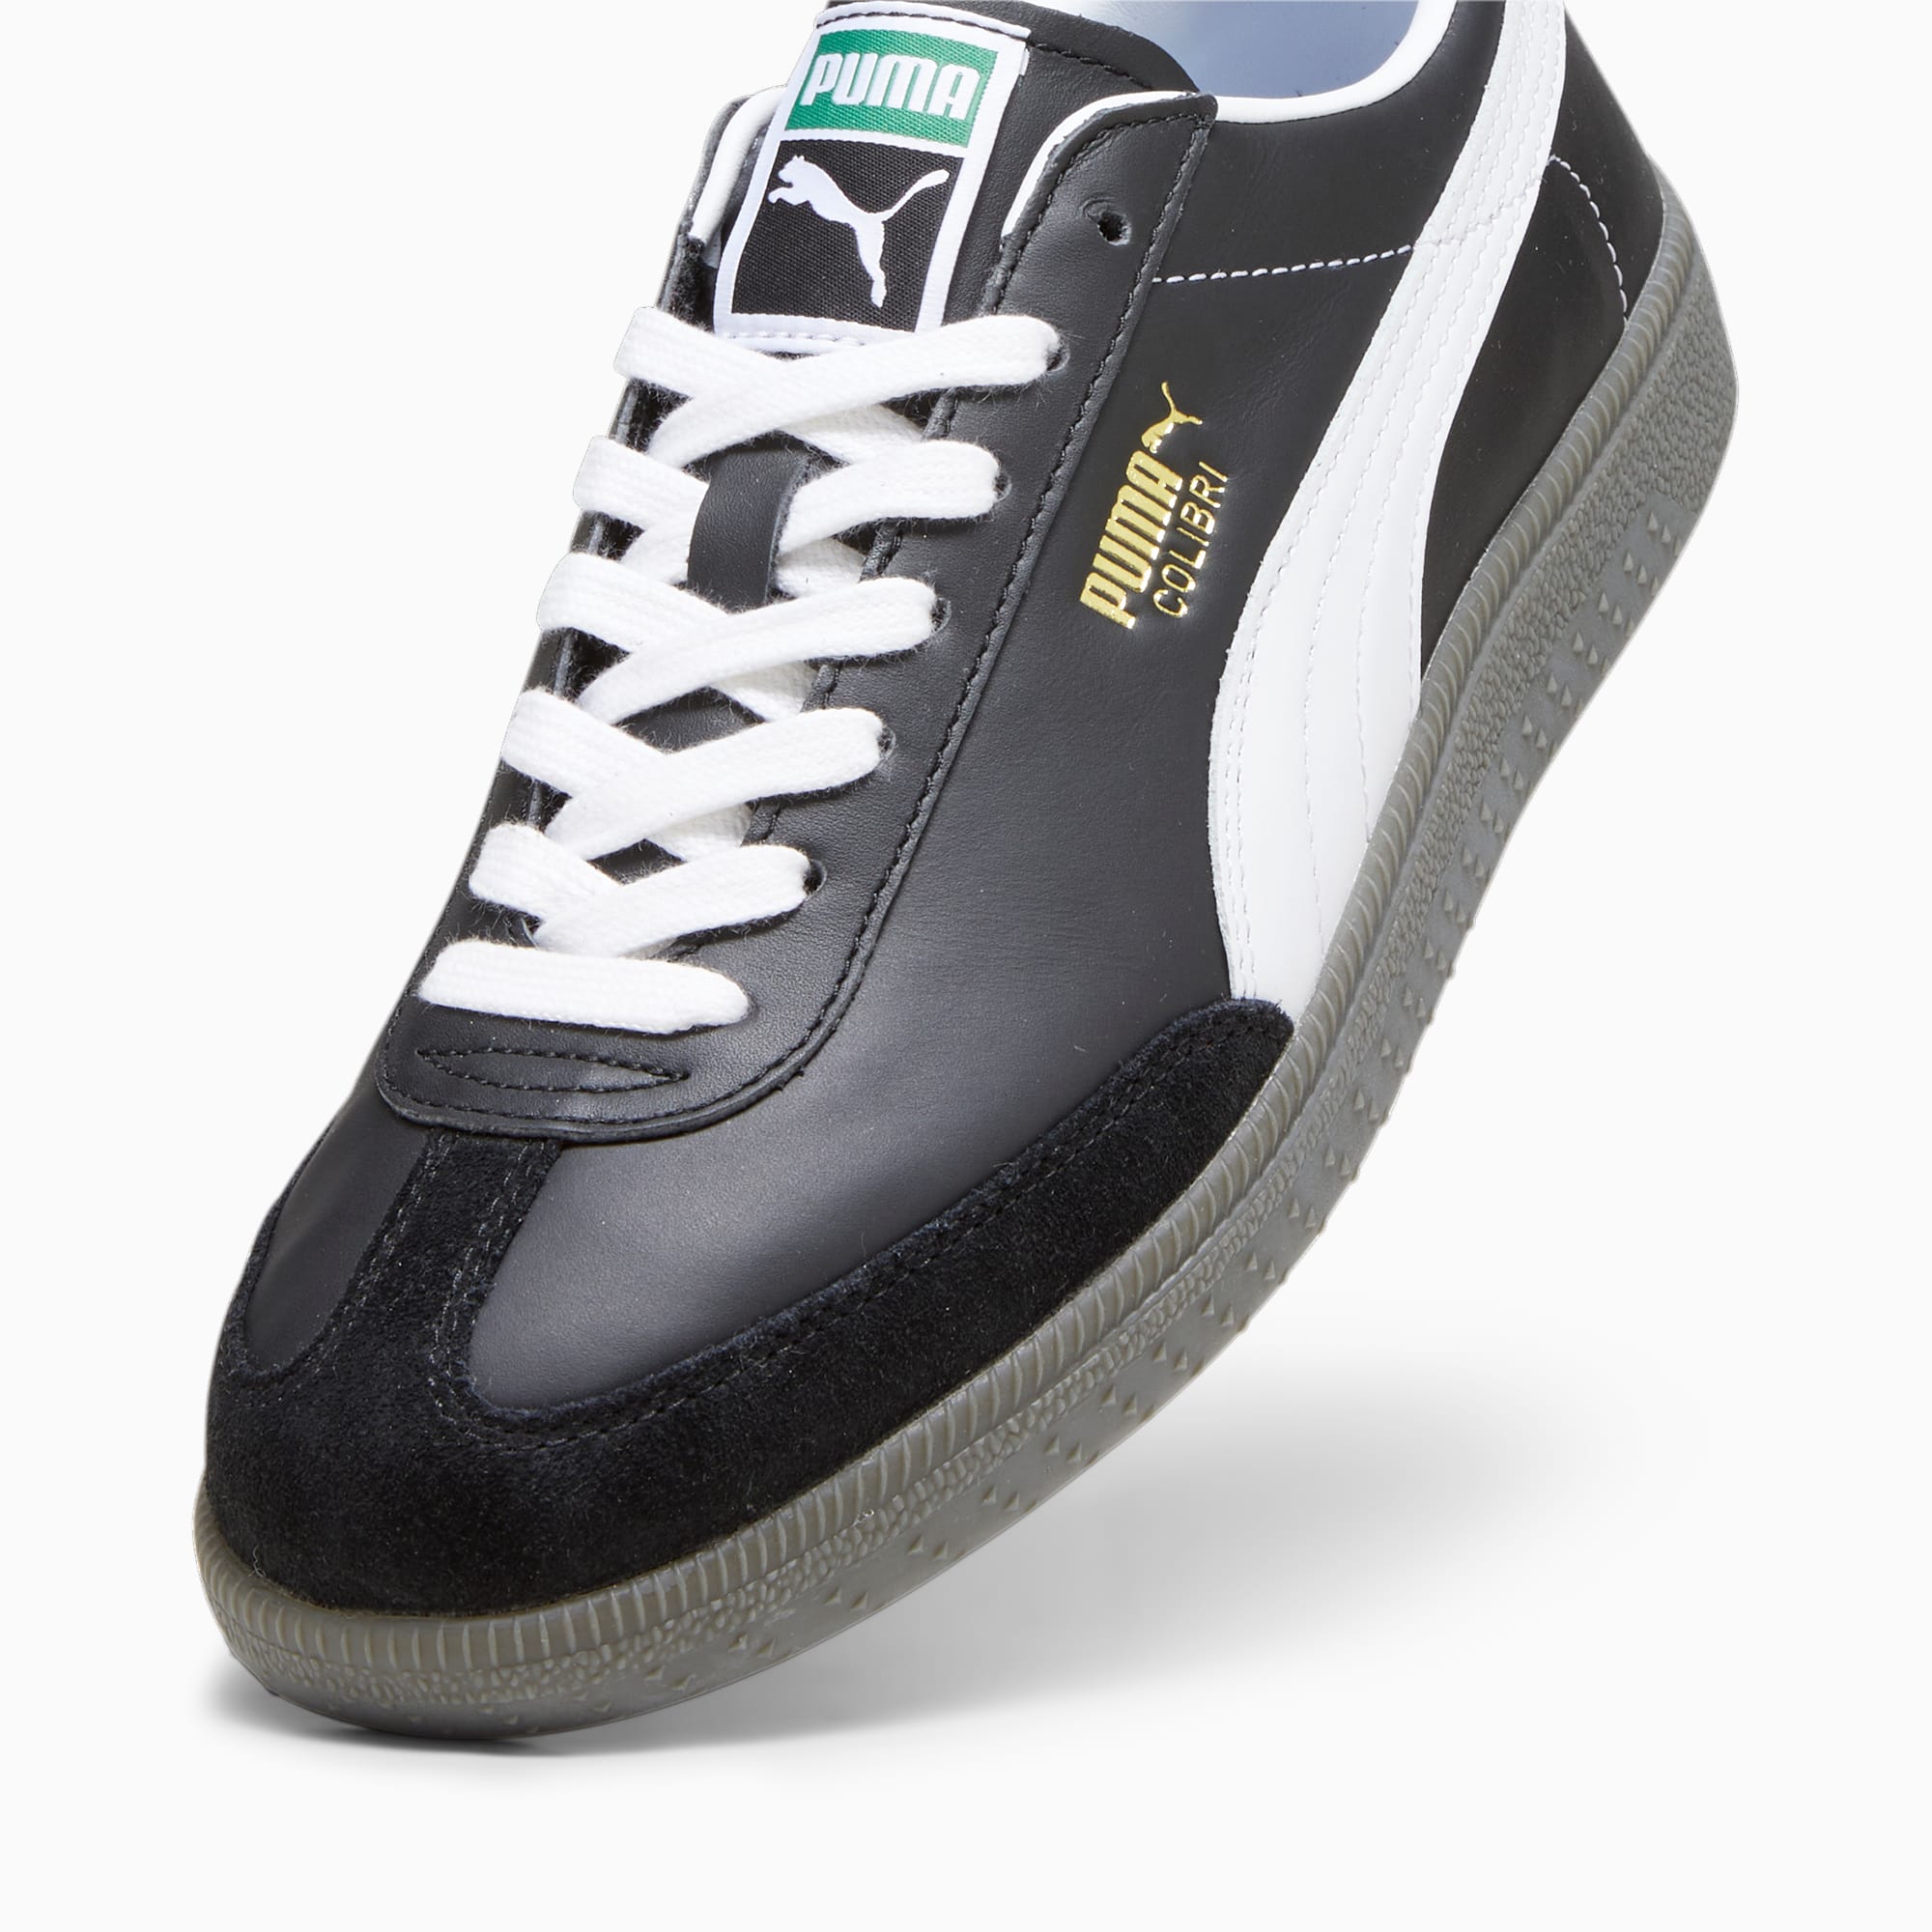 PUMA Colibri OG Sneakers Schuhe, Schwarz/Weiß, Größe: 35.5, Schuhe